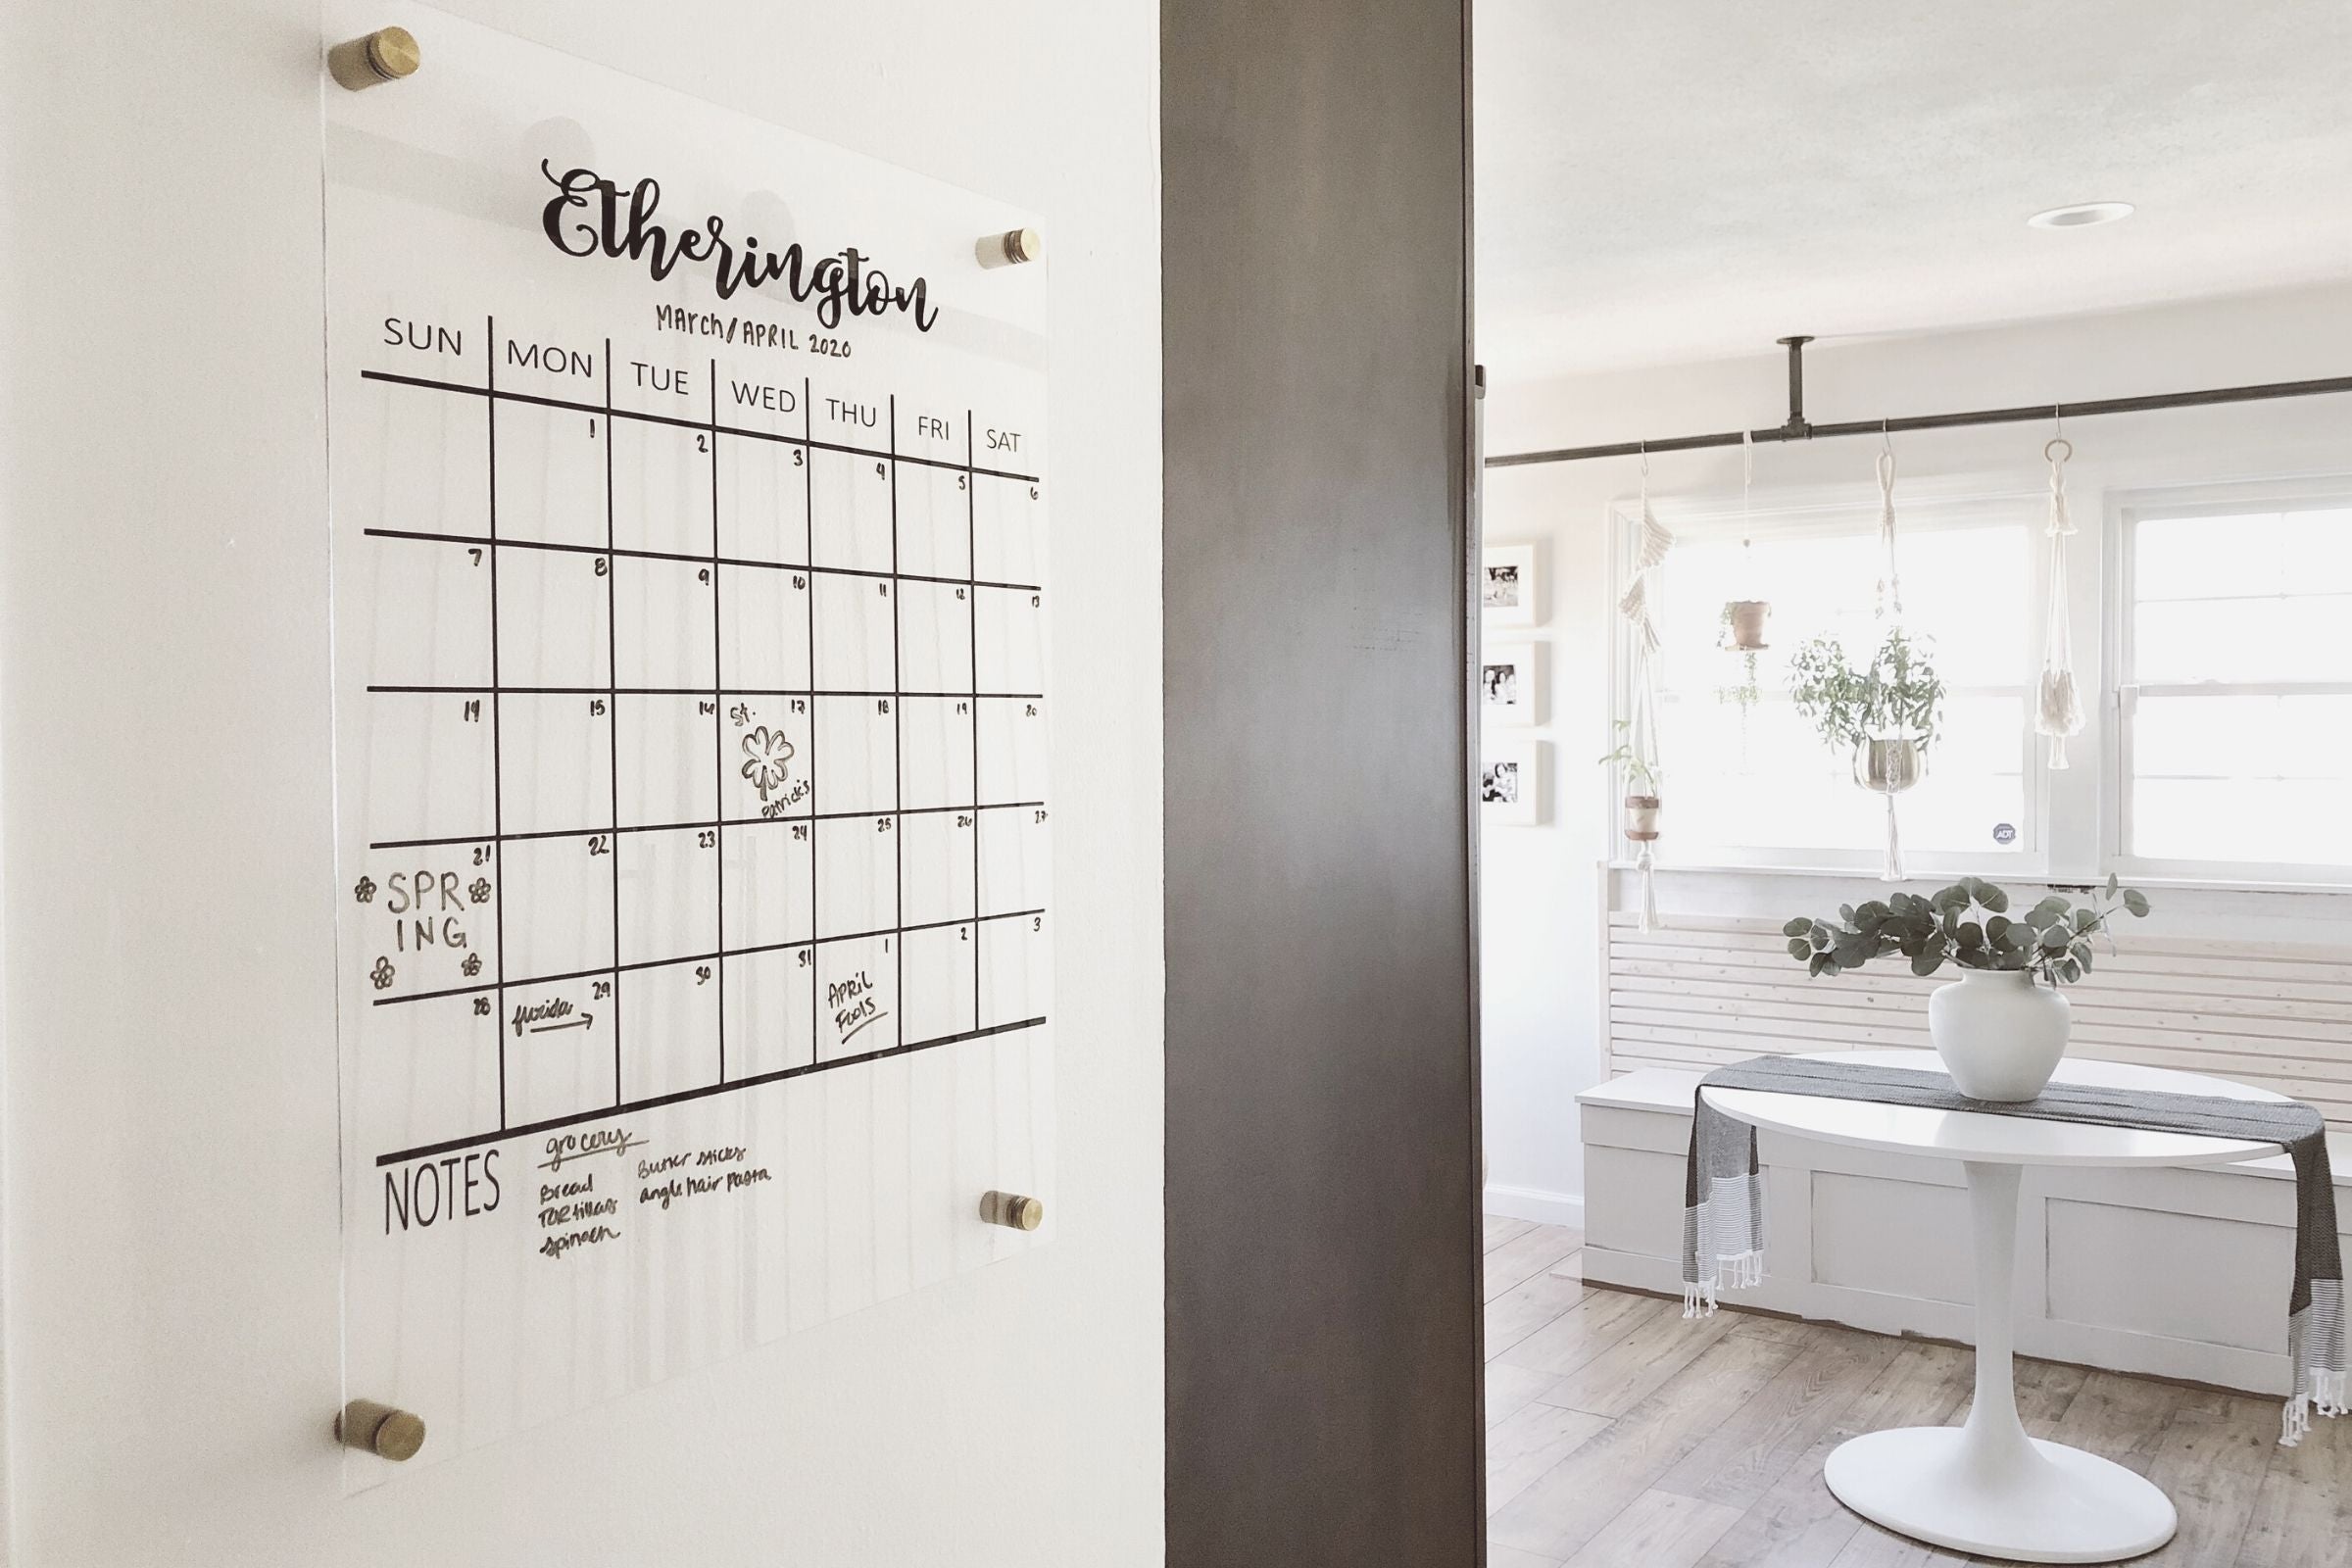 Best Acrylic Calendar - Makes Gorgeous Home Office Decor